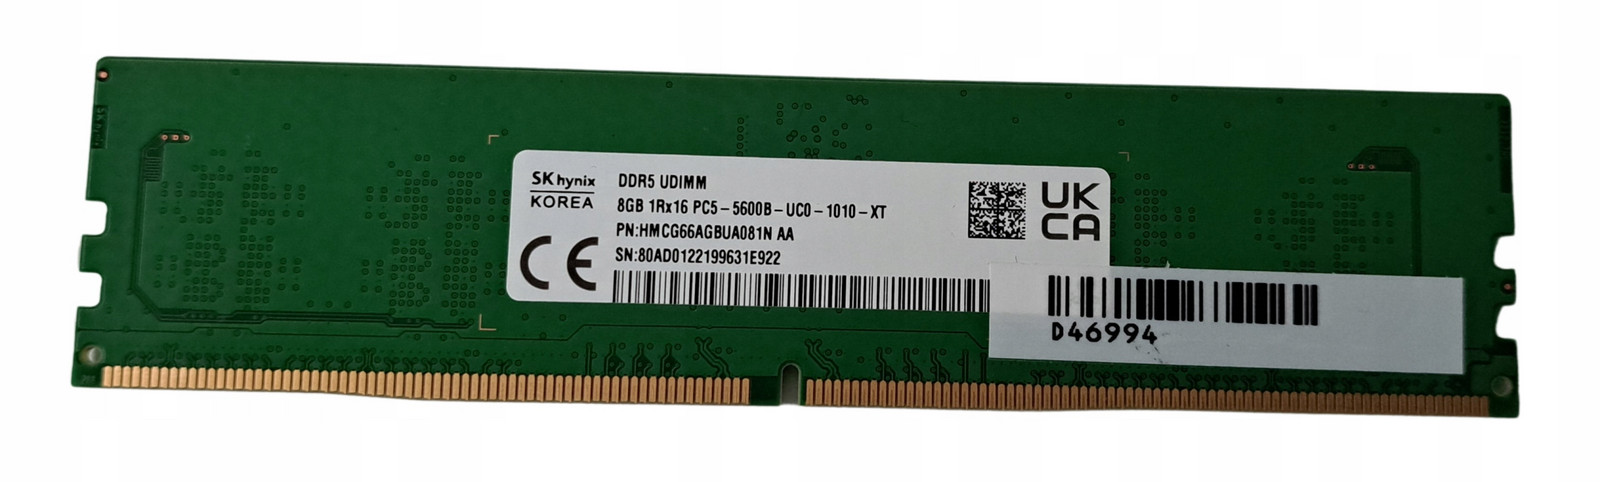 Sk Hynix DDR5 Udimm 8GB 5600MHz